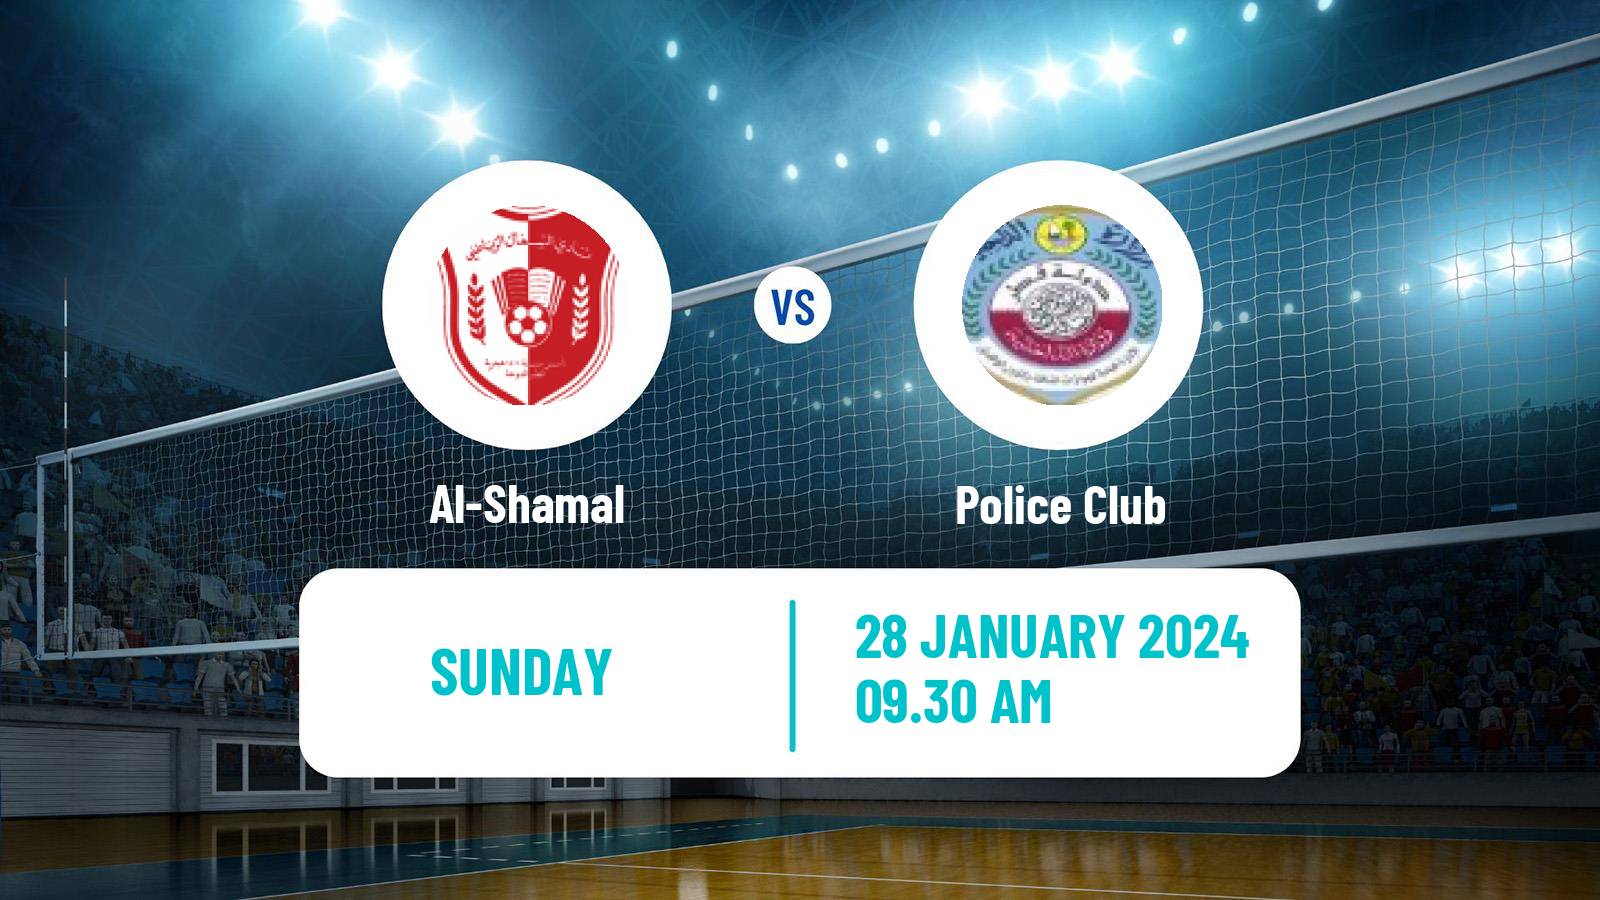 Volleyball Qatar Volleyball League Al-Shamal - Police Club